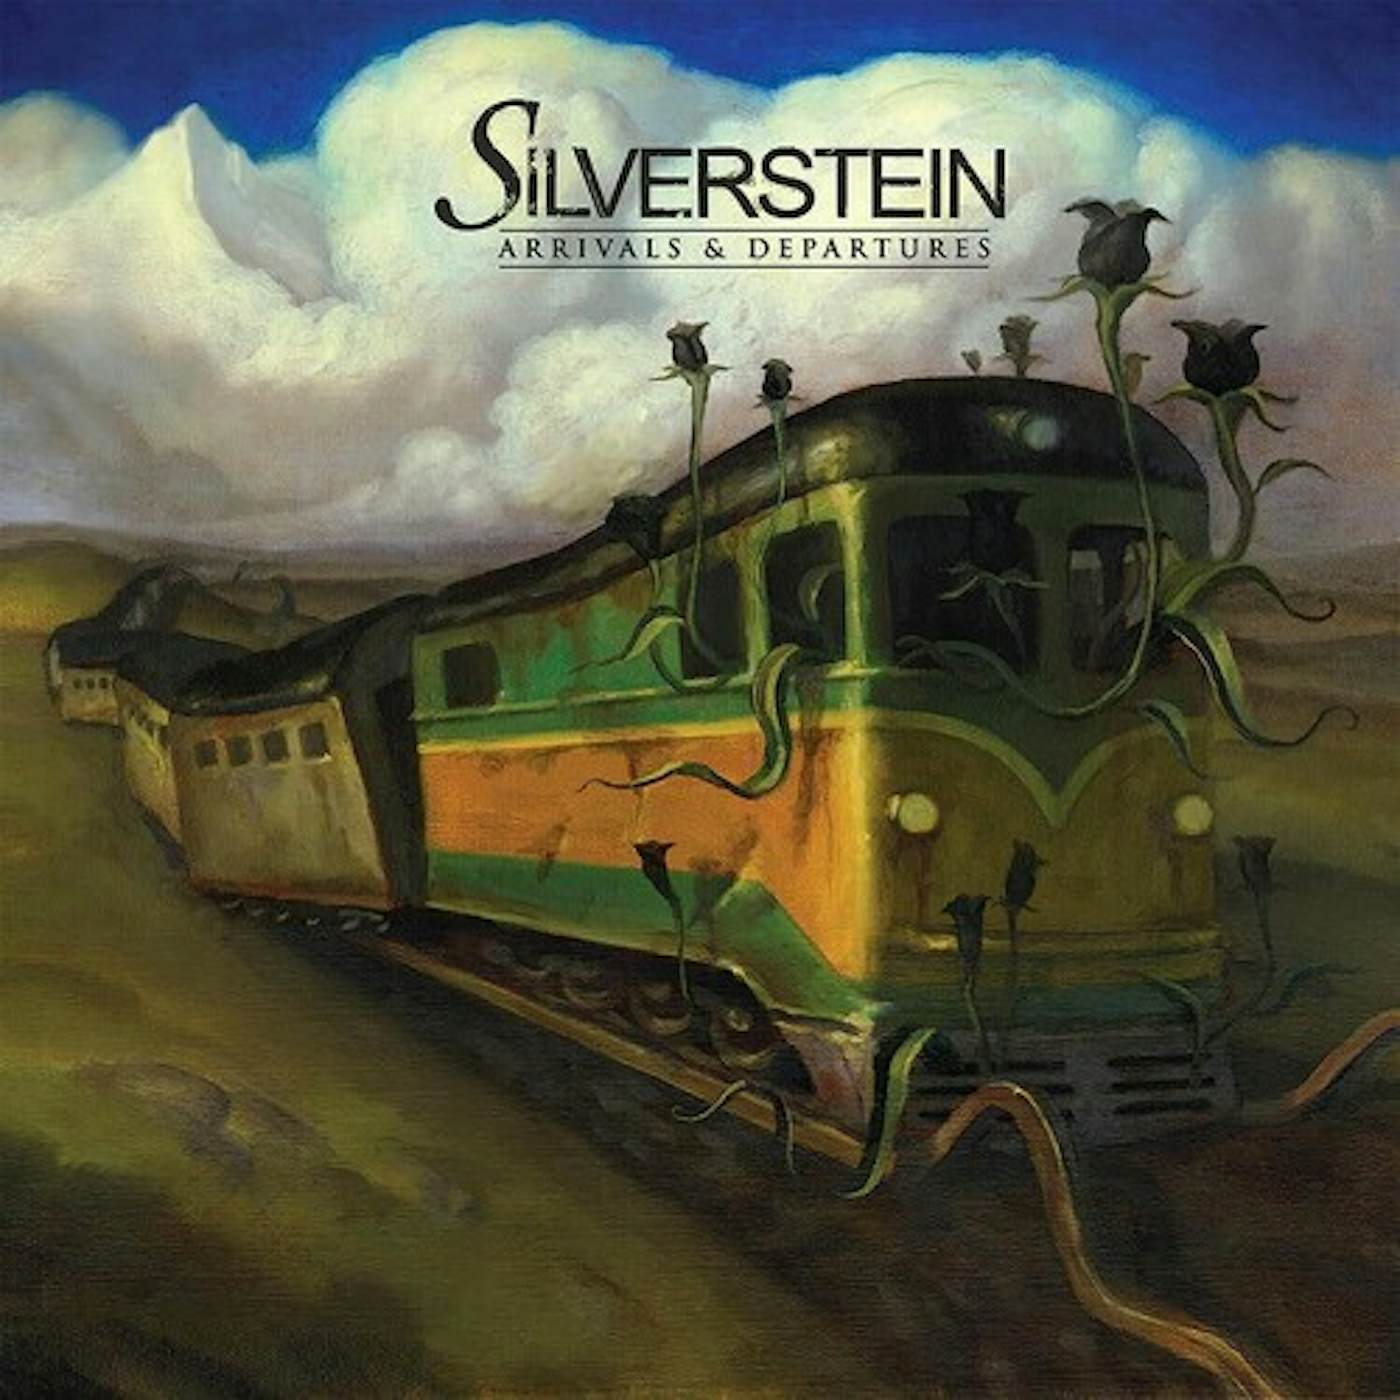 Silverstein Arrivals & Departures (15th Anniversary) Vinyl Record